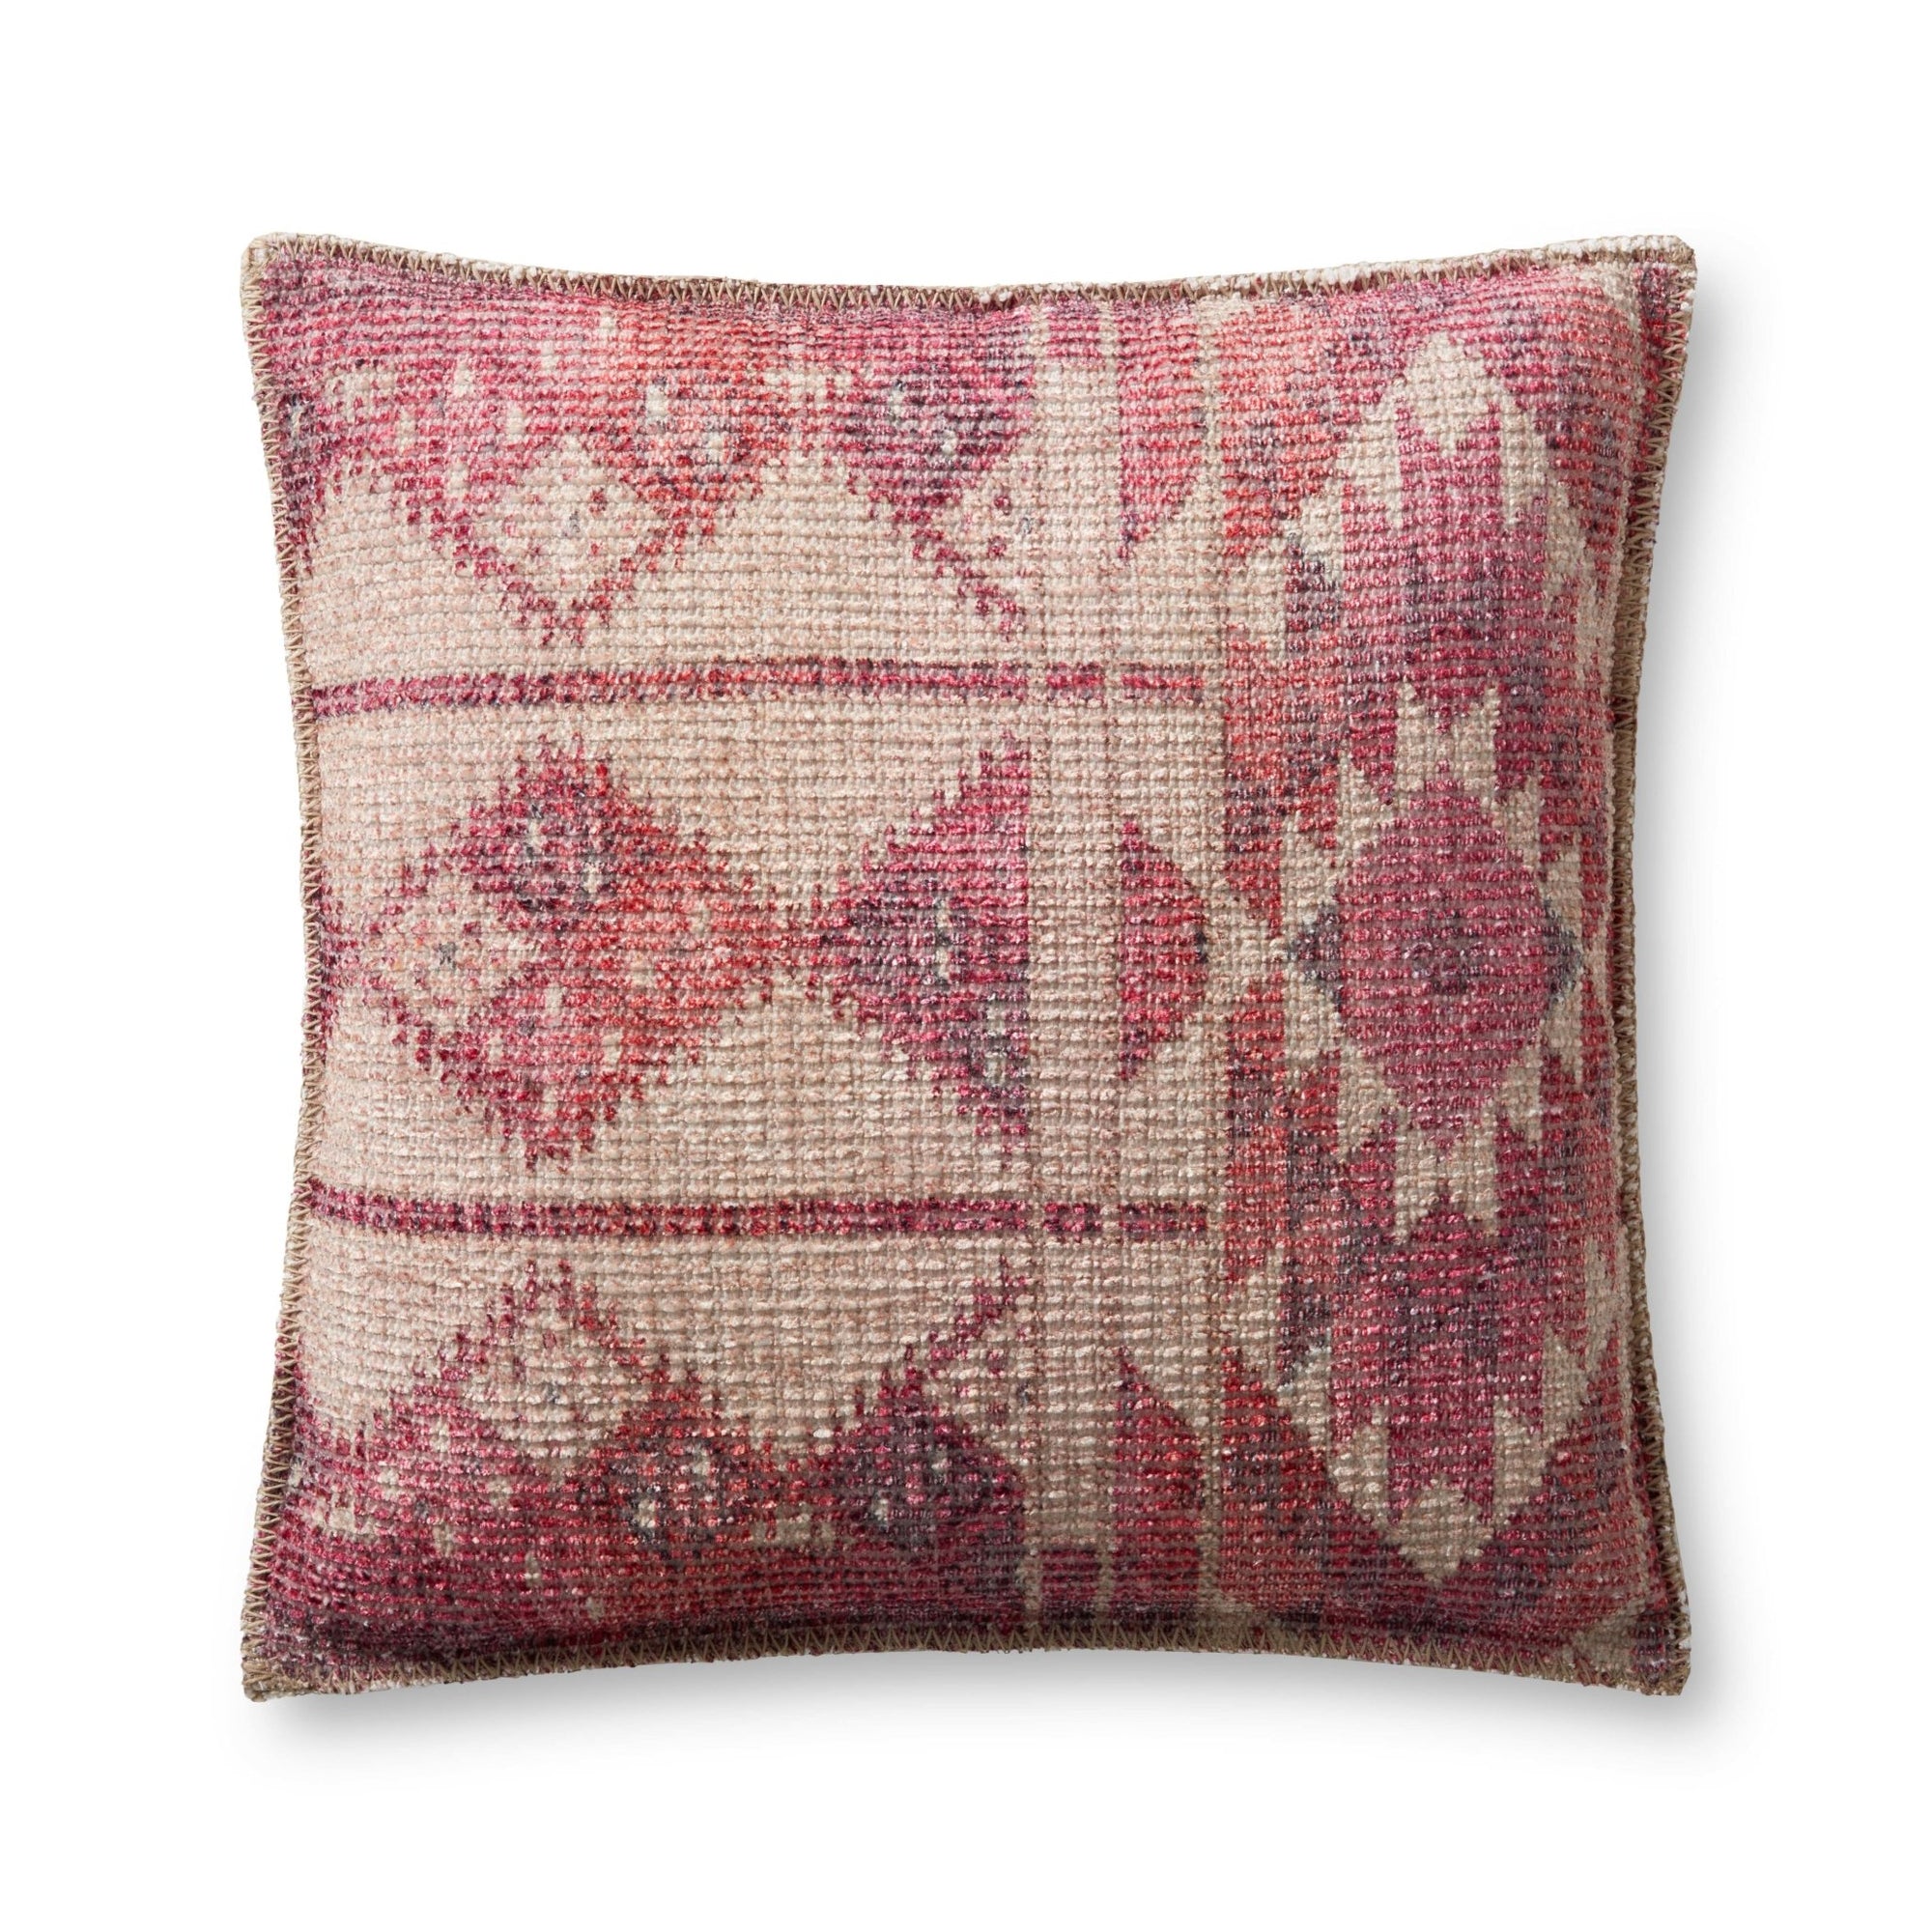 Justina Blakeney P0962 Pink/Multi Pillow - Rug & Home